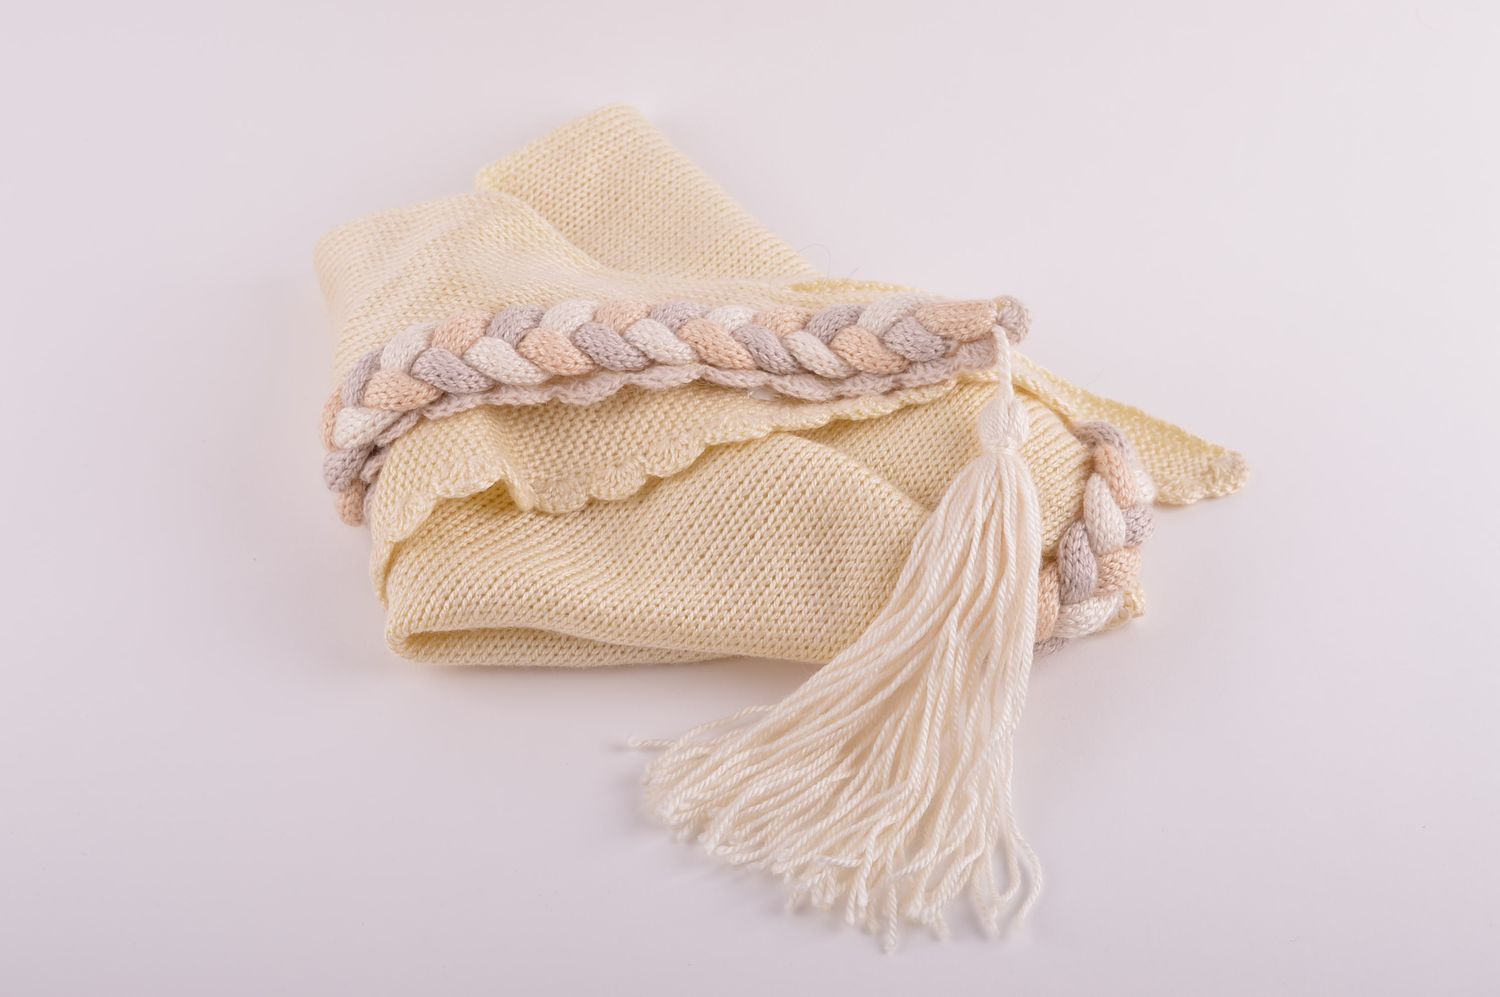 Вязаная шаль ручной работы женская накидка большой бежевый шарф вязаная вещь фото 3